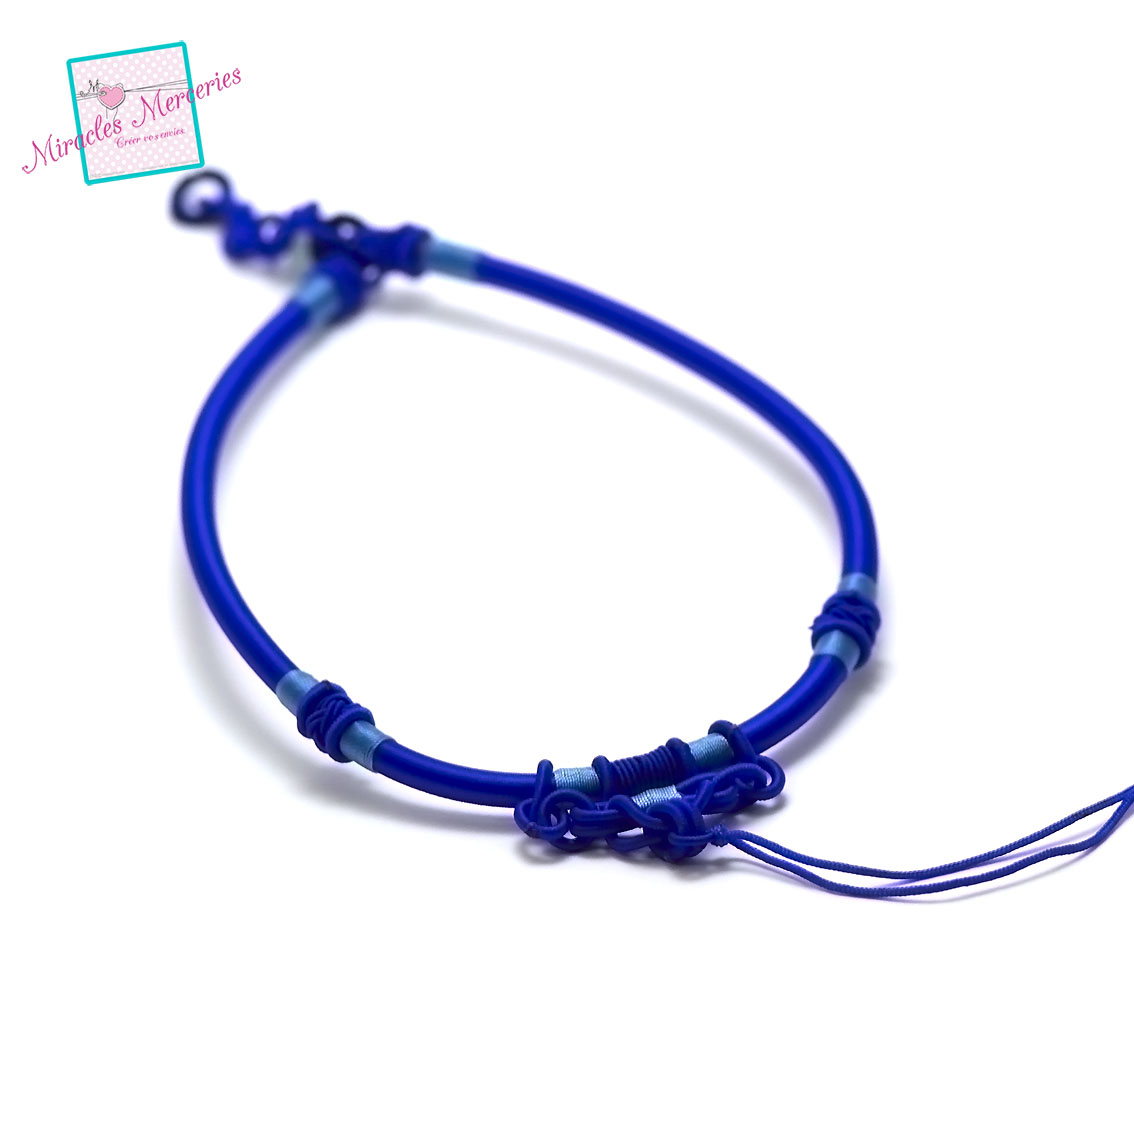 1 magnifique support collier créateur en fil de soie tressé à la main,bleu électrique